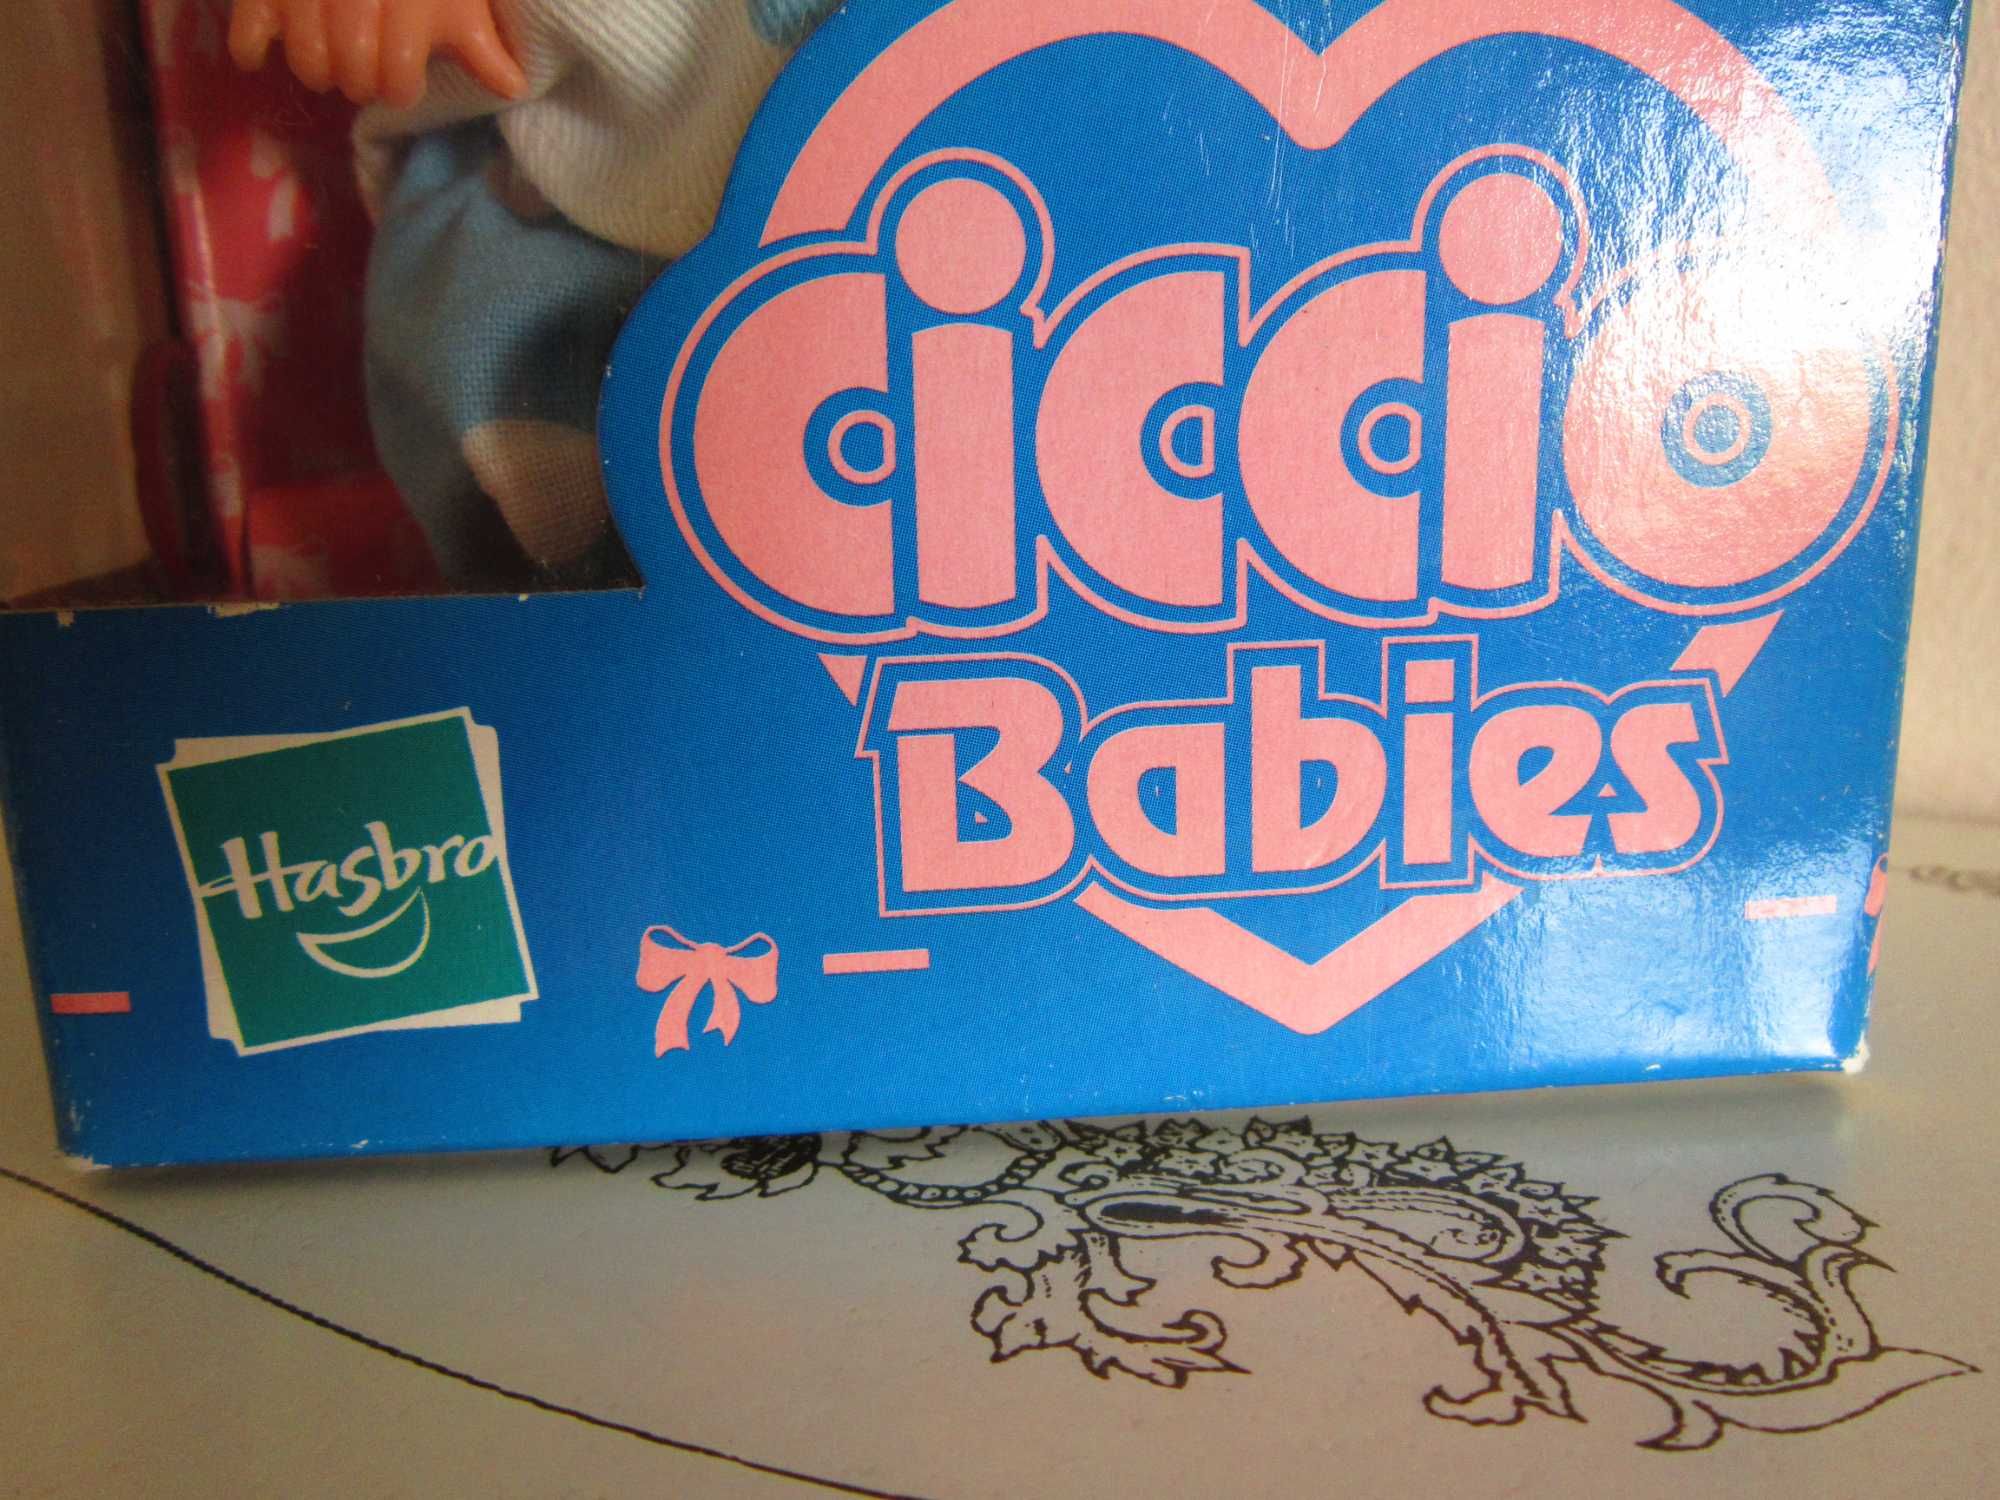 Papusa de colectie Ciccio Babies Hasbro 1999 plange si spune"mama"